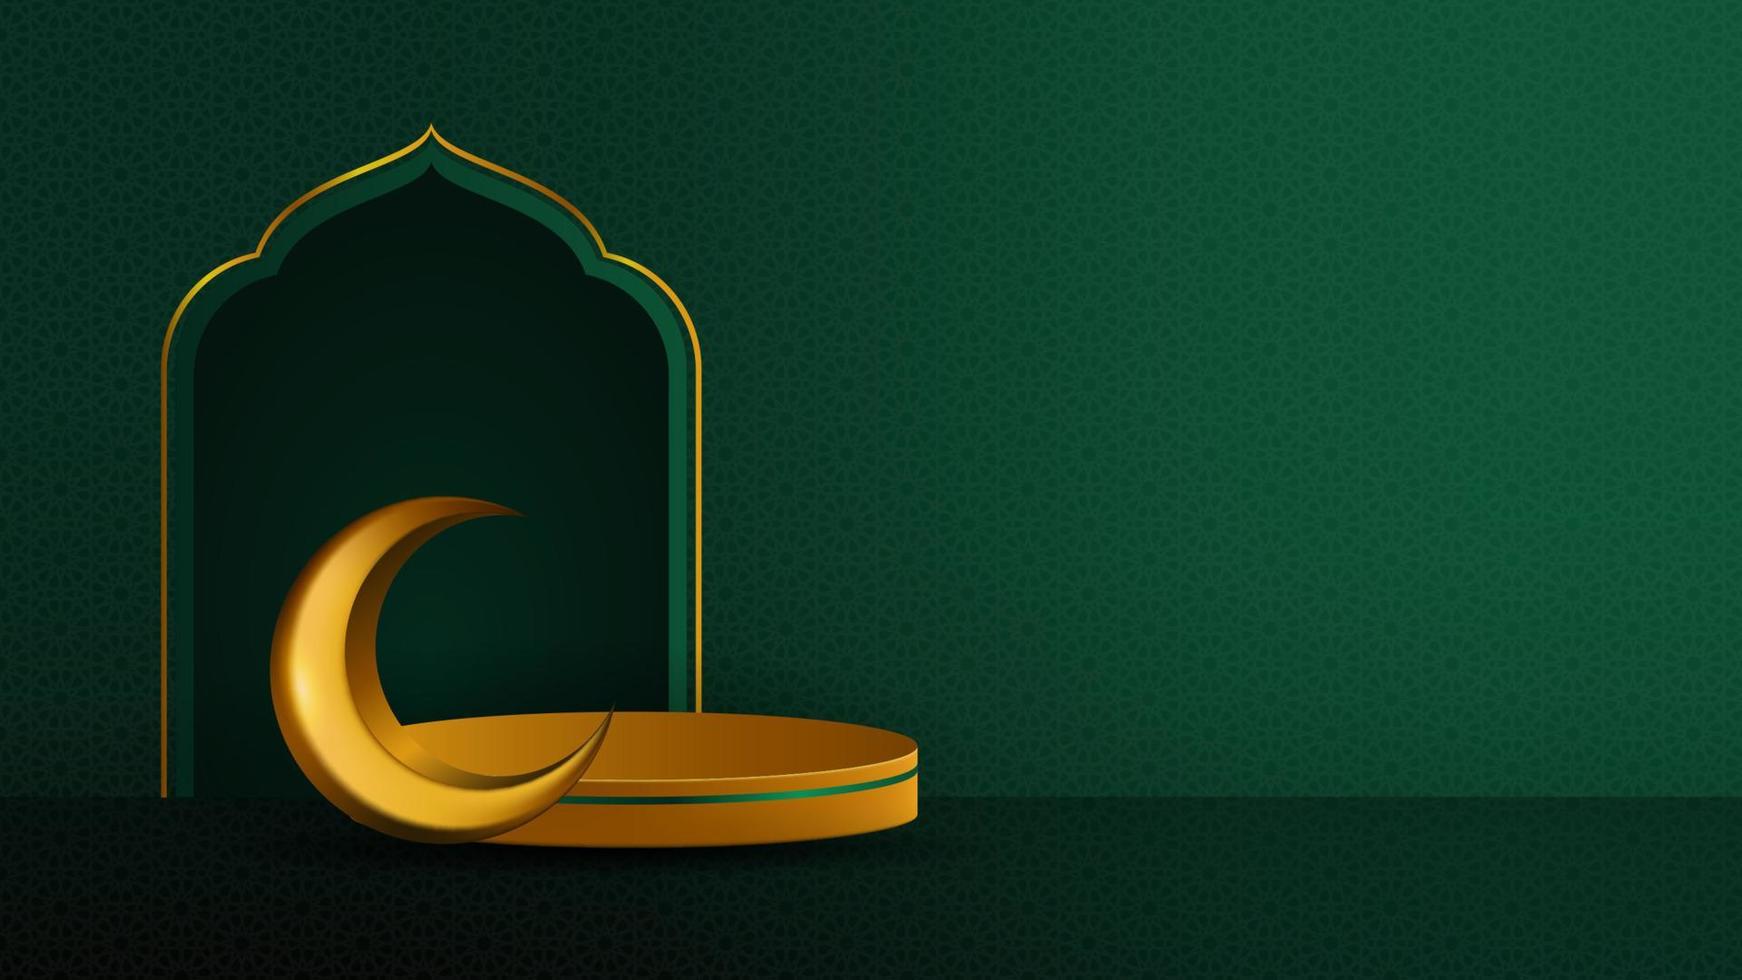 islamitische achtergrond sjabloon met mihrab, podium en halve maan op smaragdgroene achtergrond. islamitische vectorillustratie voor moslimvakanties vector